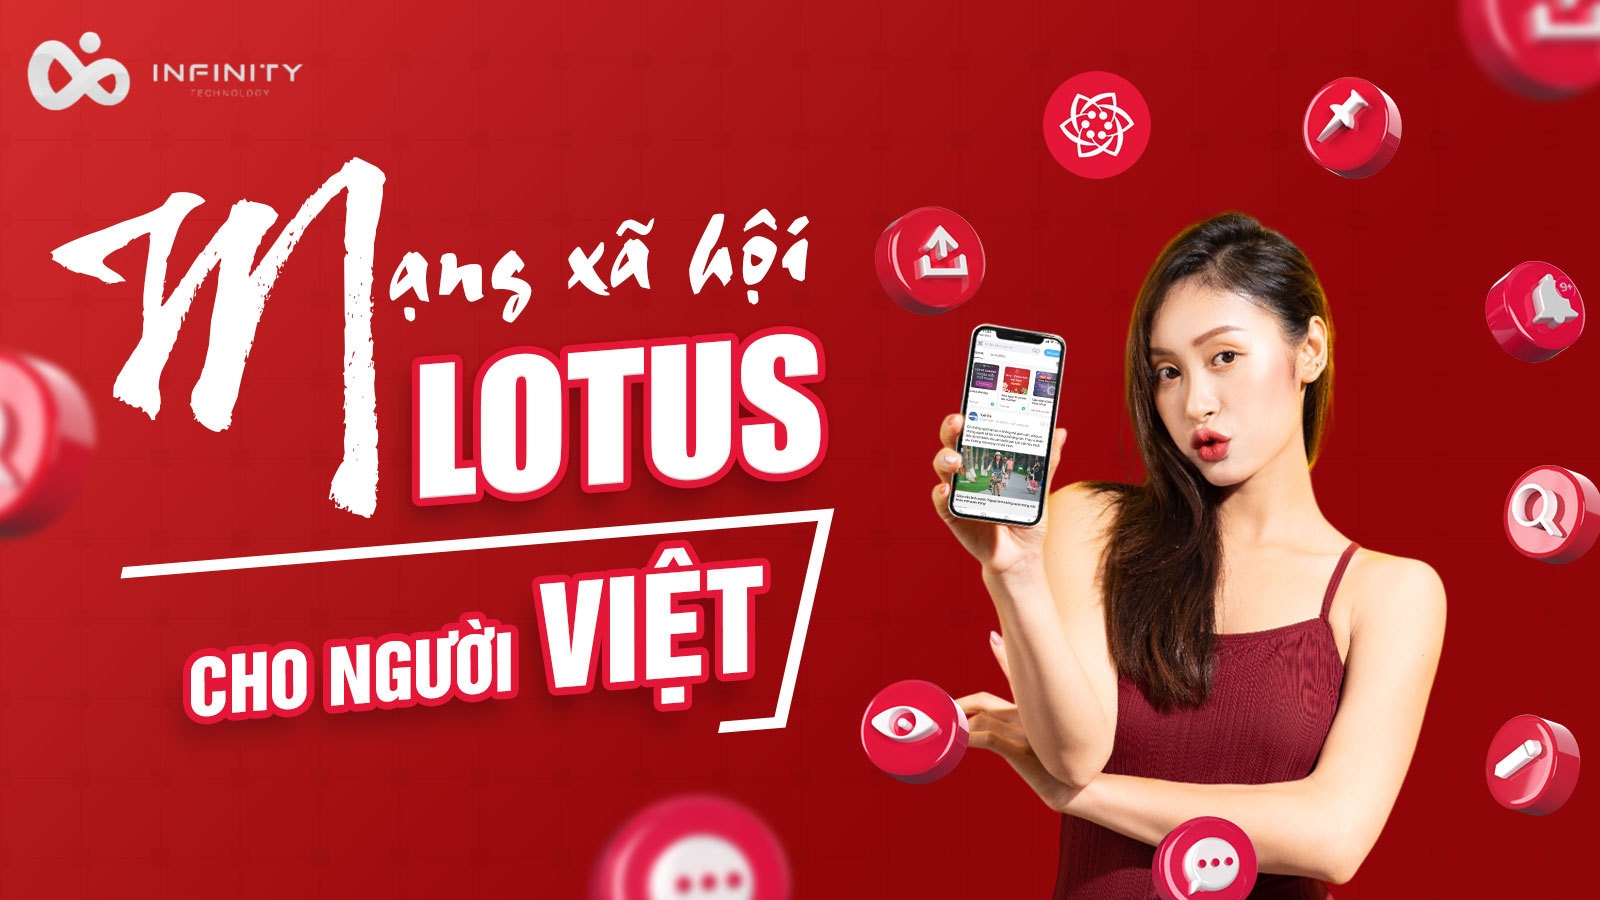 Lotus – Mạng xã hội dành cho người Việt là gì ?